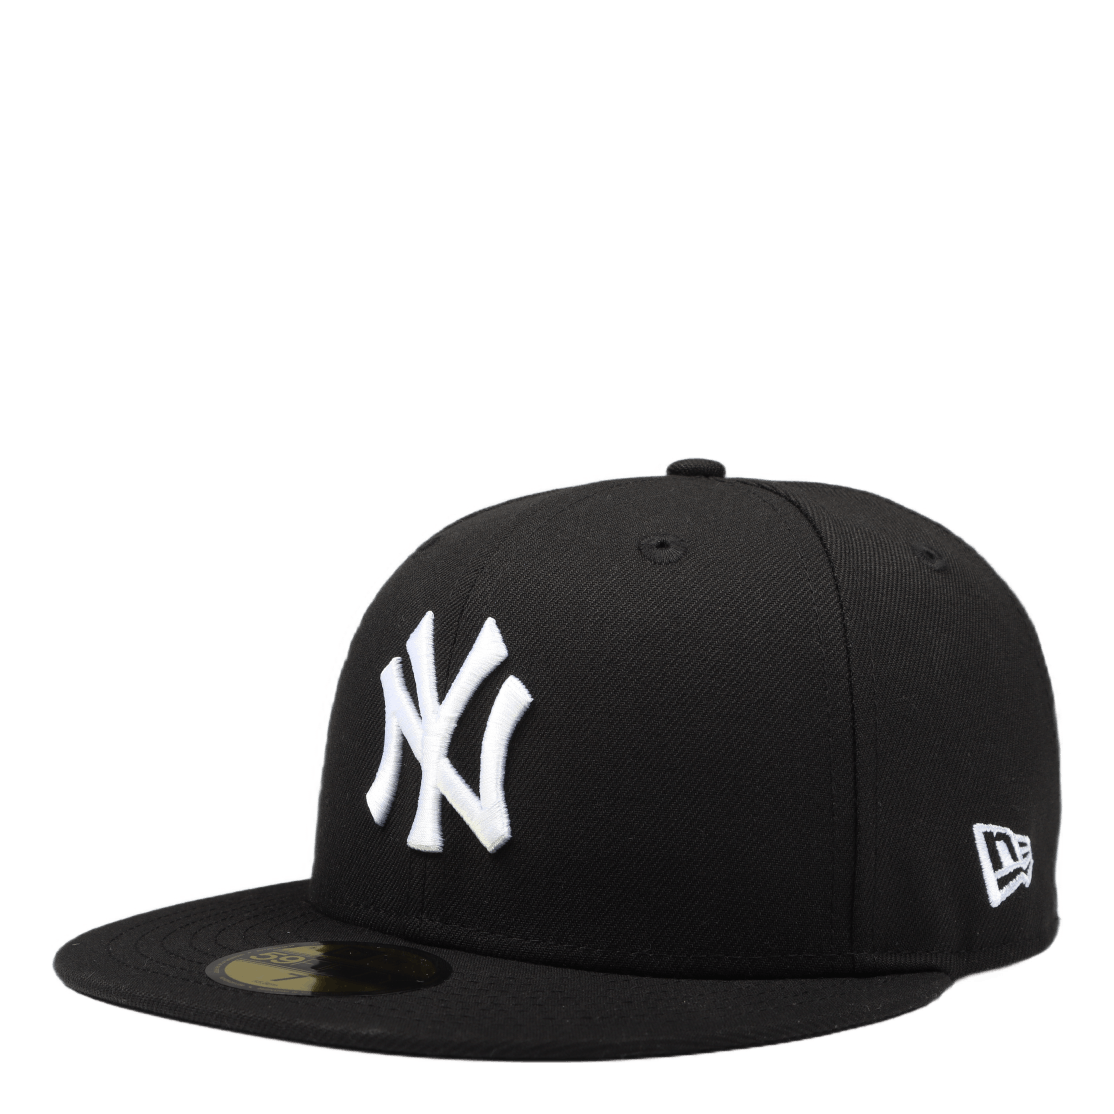 Mlb Basic Yankees 5950 Black Black